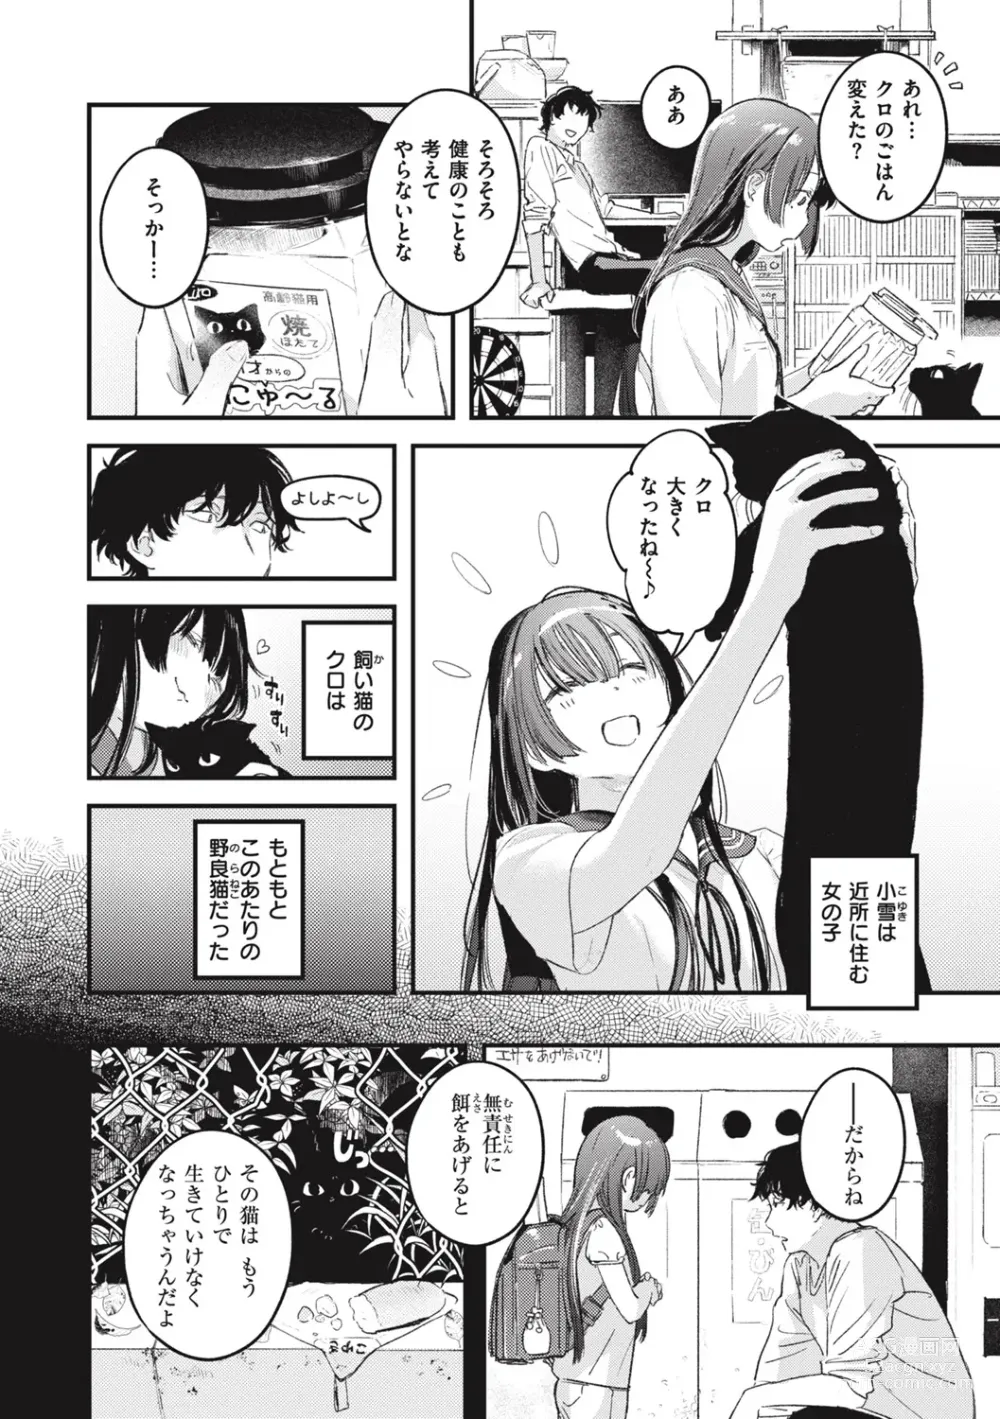 Page 8 of manga Koi no Mukidashi